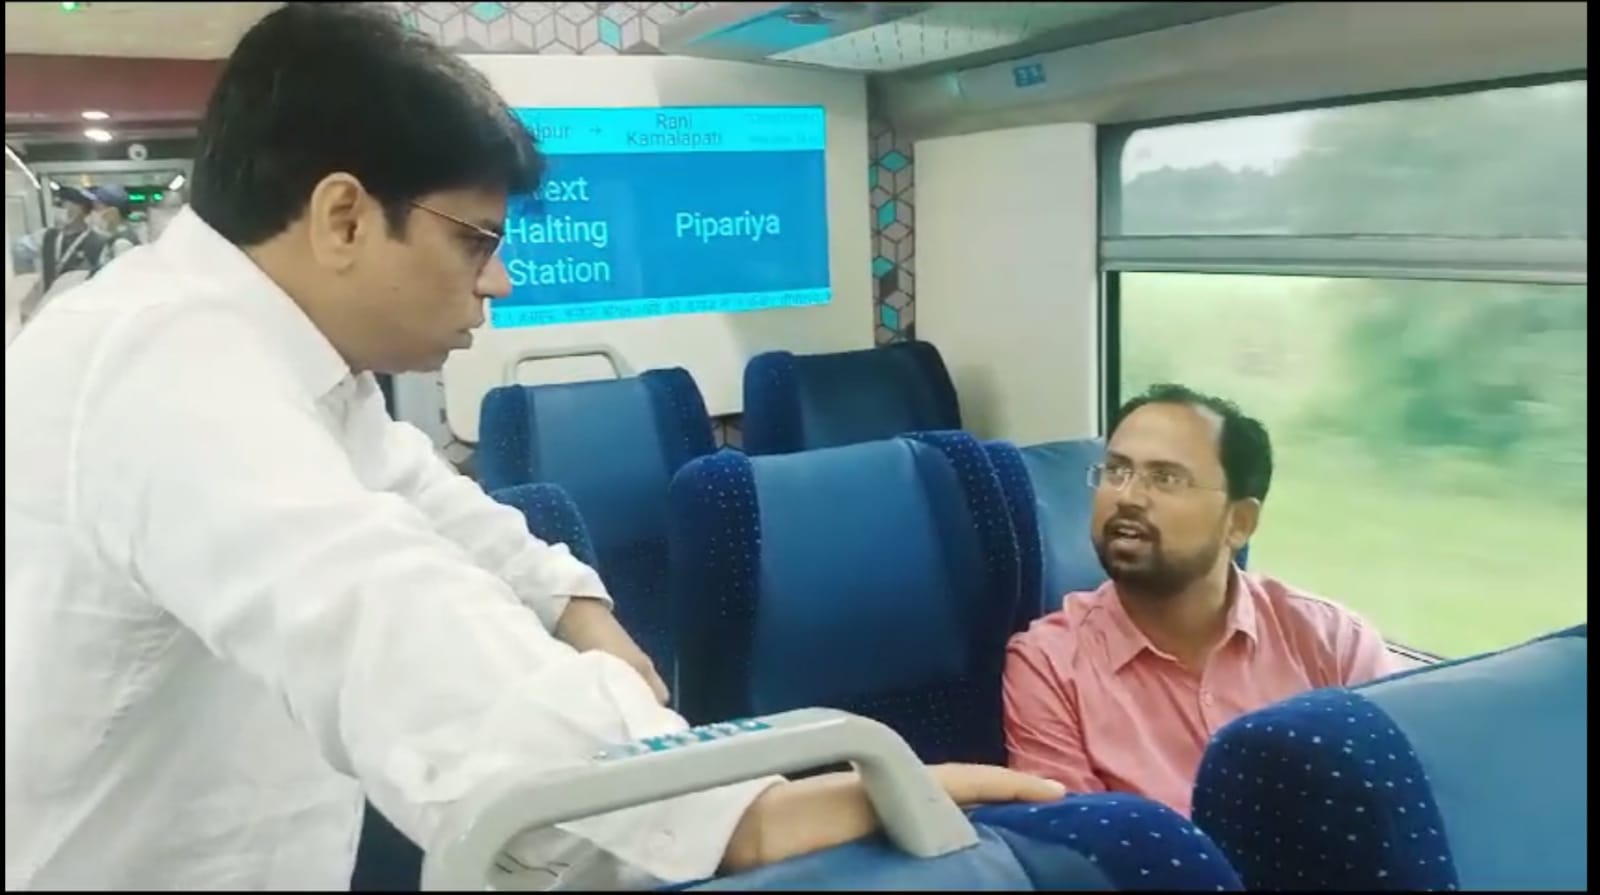 जबलपुर-भोपाल वंदे भारत है शानदार ट्रेन, लक्जरी फीलिंग है खासियत, लेकिन इसे इंदौर तक बढ़ाएं, यात्रियों ने दी सलाह, देखें वीडियो